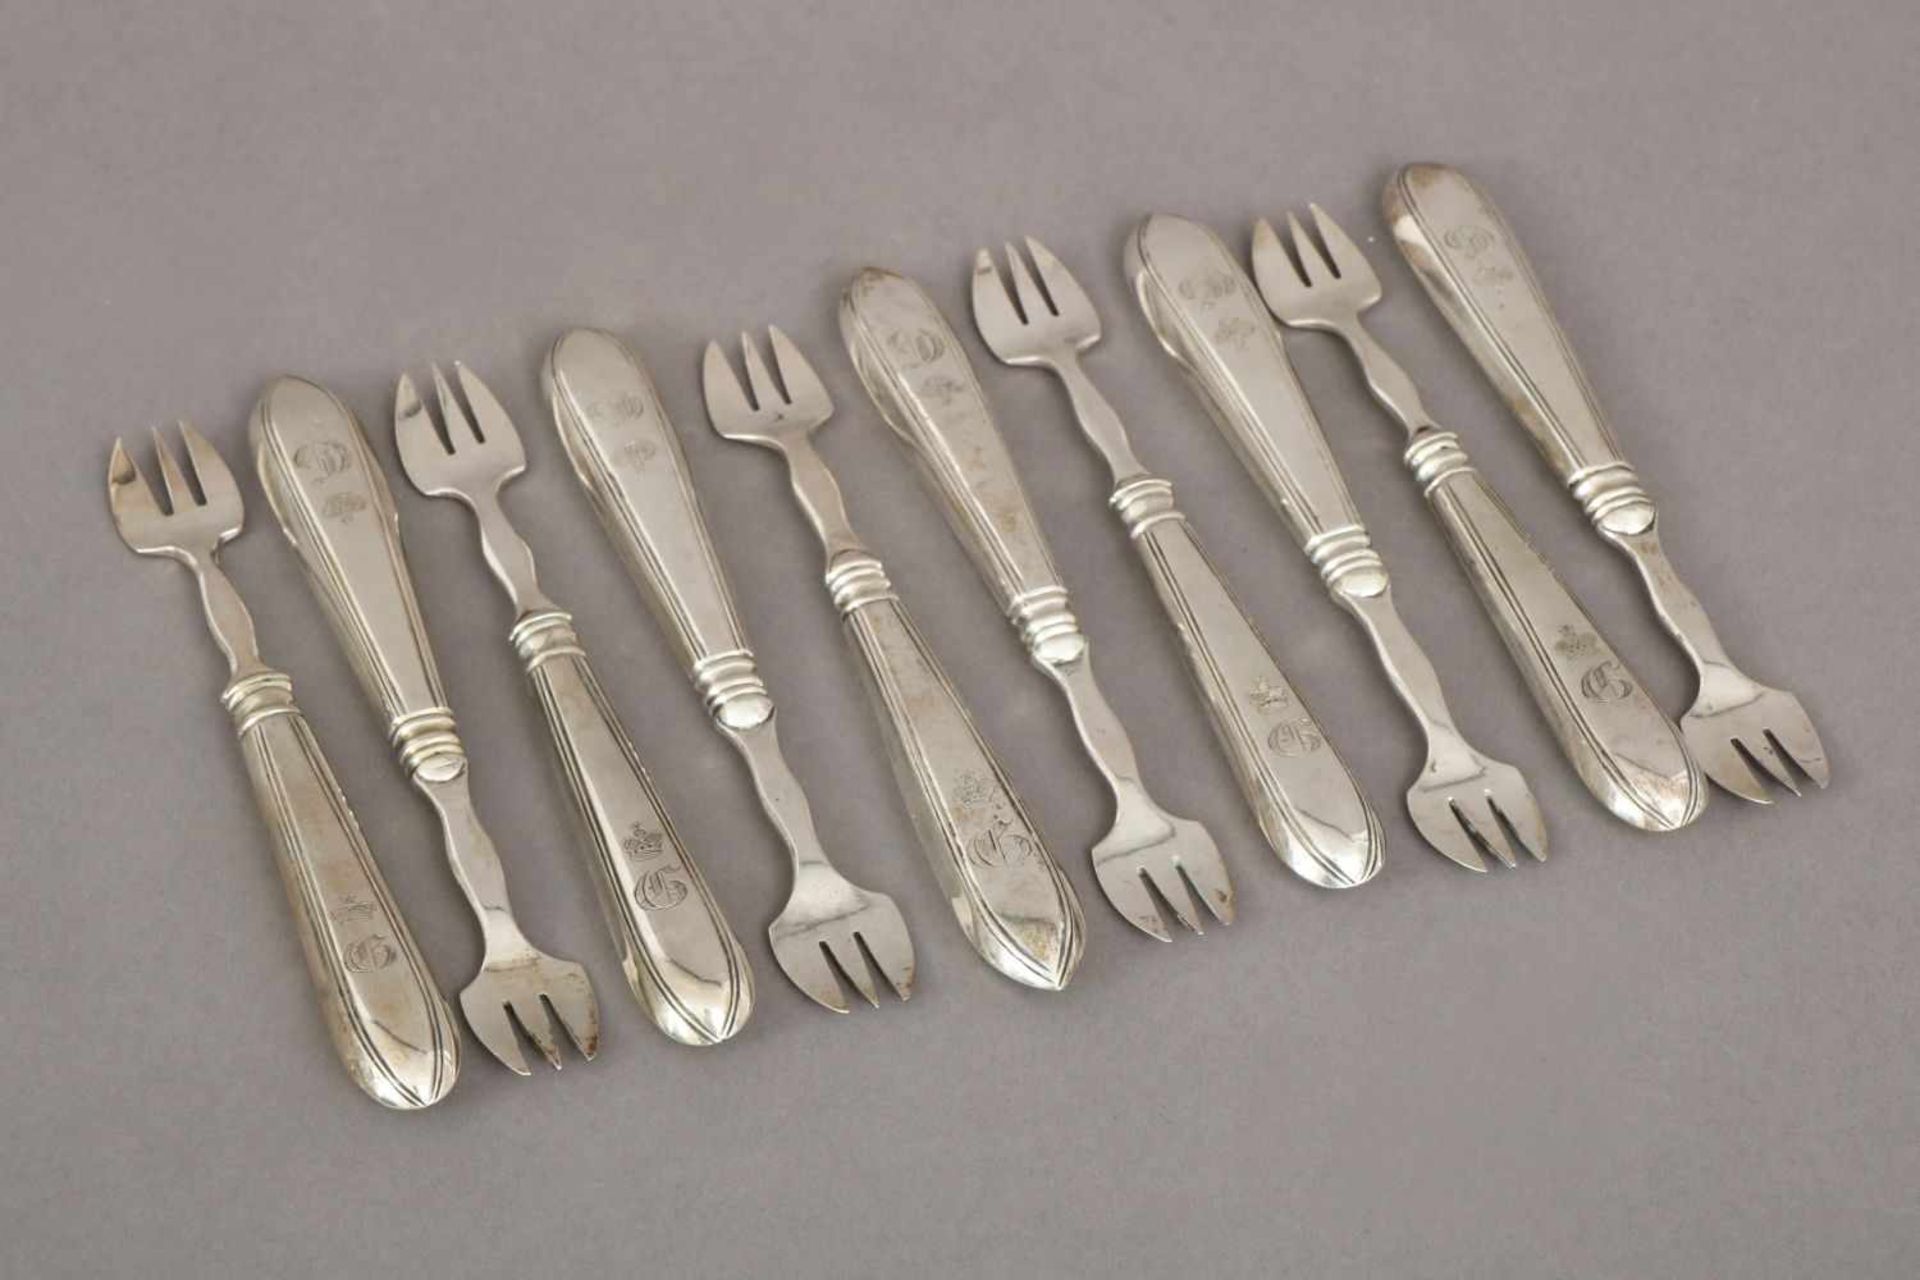 10 Austerngabeln13 Lot Silber, Deutsch, um 1860, Griffe mit Fadendekor, 3-zackige Forke, Griffe